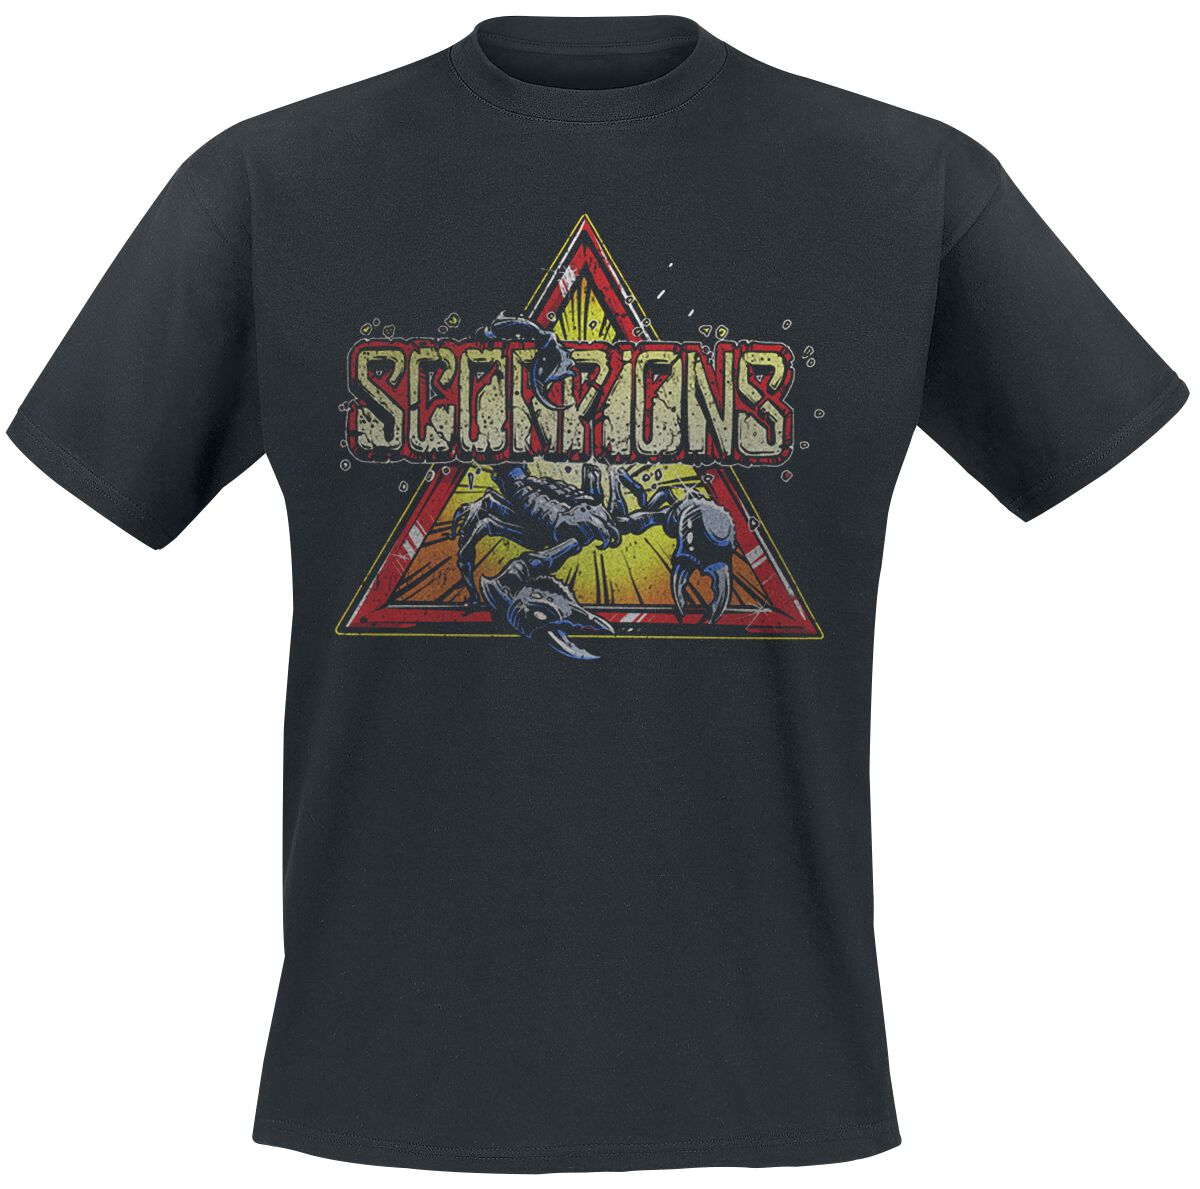 Scorpions T-Shirt - Triangle Scorpion - S bis 3XL - für Männer - Größe XXL - schwarz  - Lizenziertes Merchandise!